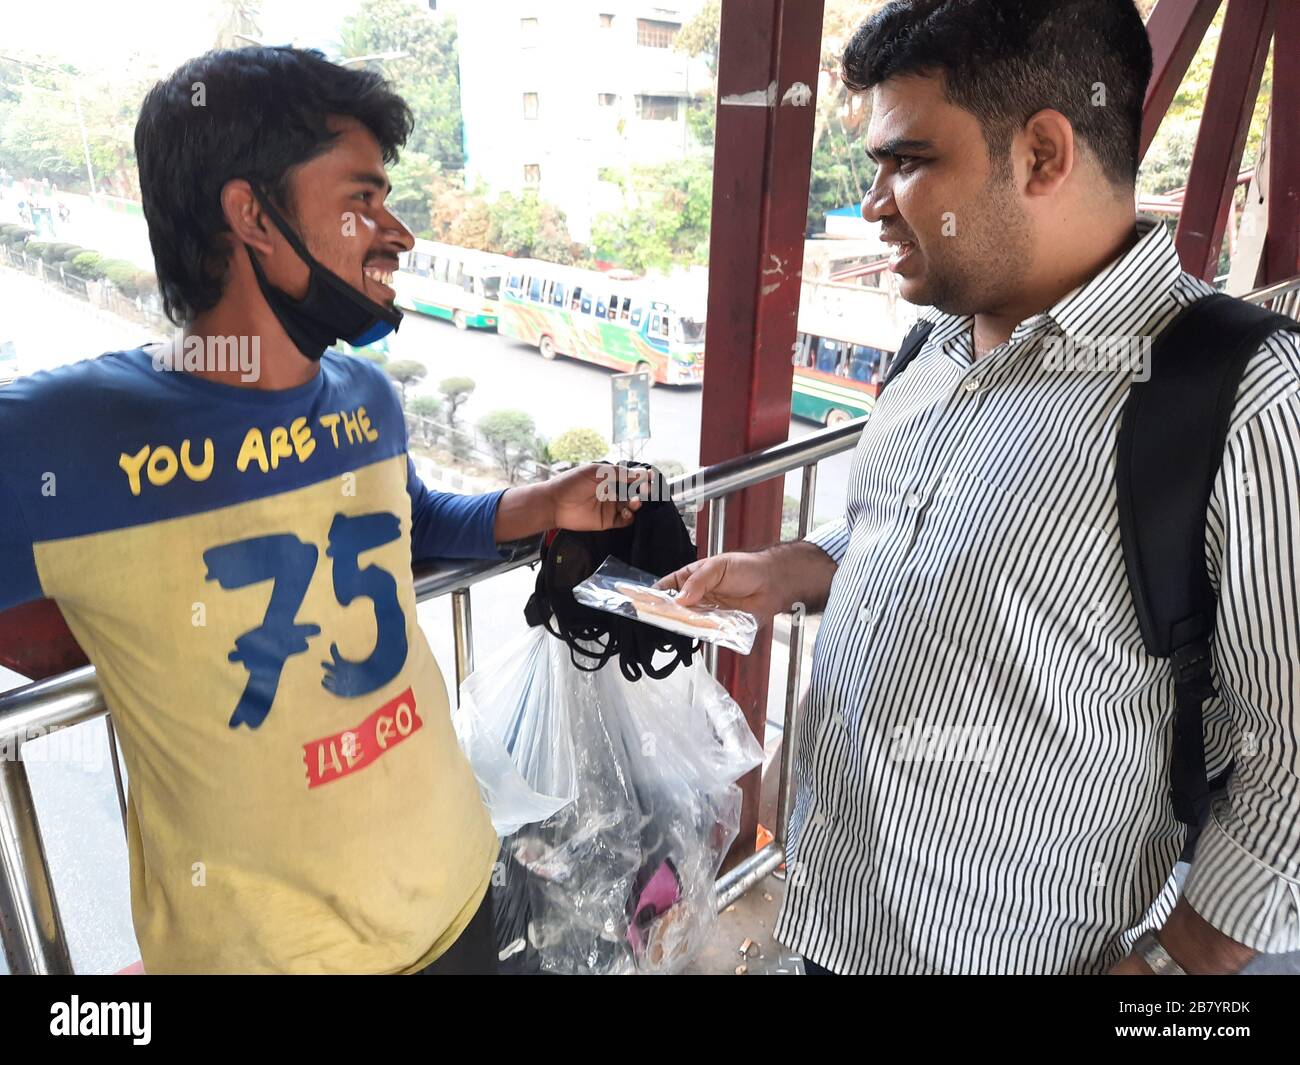 Un cliente che contrattava con un falco di maschera per bye maschera da lui a Banani, Dhaka. A causa del virus Corona, la domanda di maschera è attualmente alla massima richiesta. Foto Stock